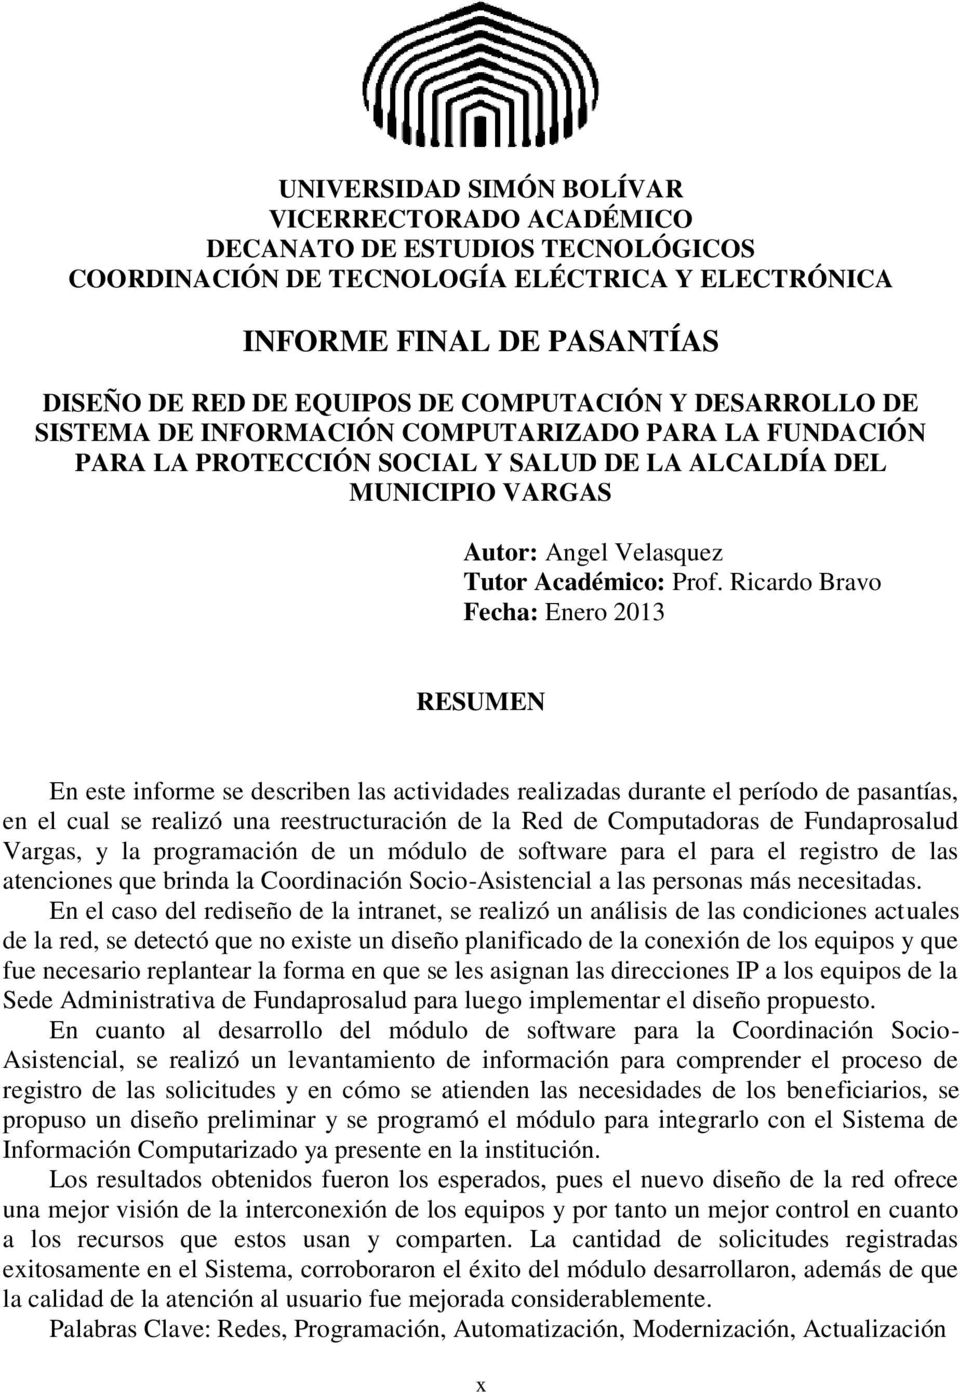 Ricardo Bravo Fecha: Enero 2013 RESUMEN En este informe se describen las actividades realizadas durante el período de pasantías, en el cual se realizó una reestructuración de la Red de Computadoras